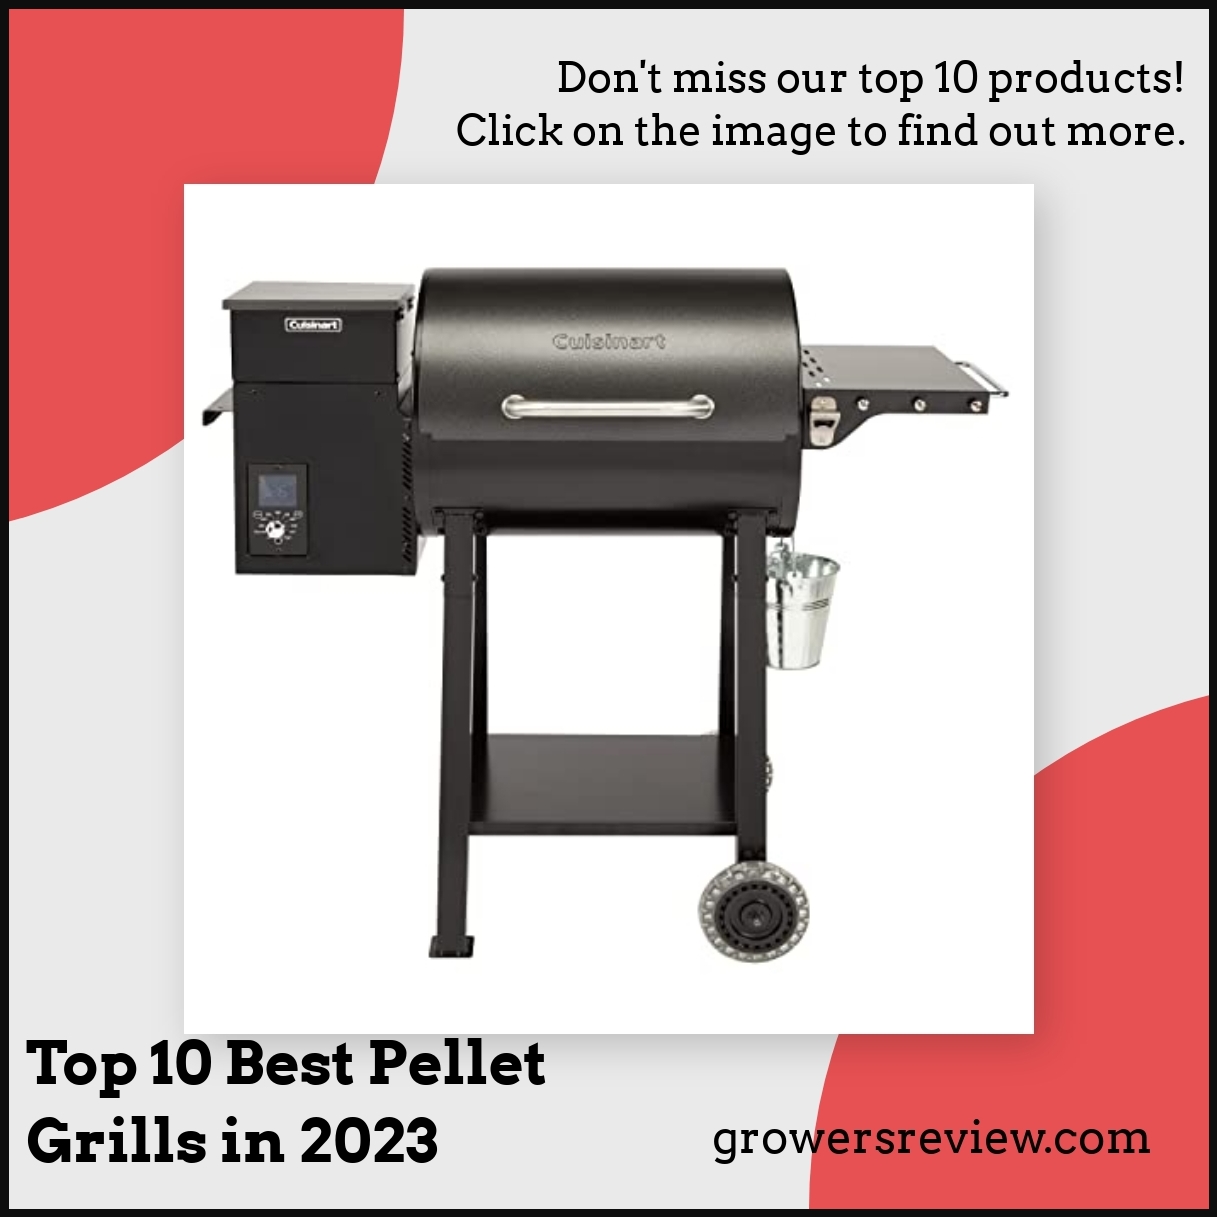 Top 10 Best Pellet Grills in 2023